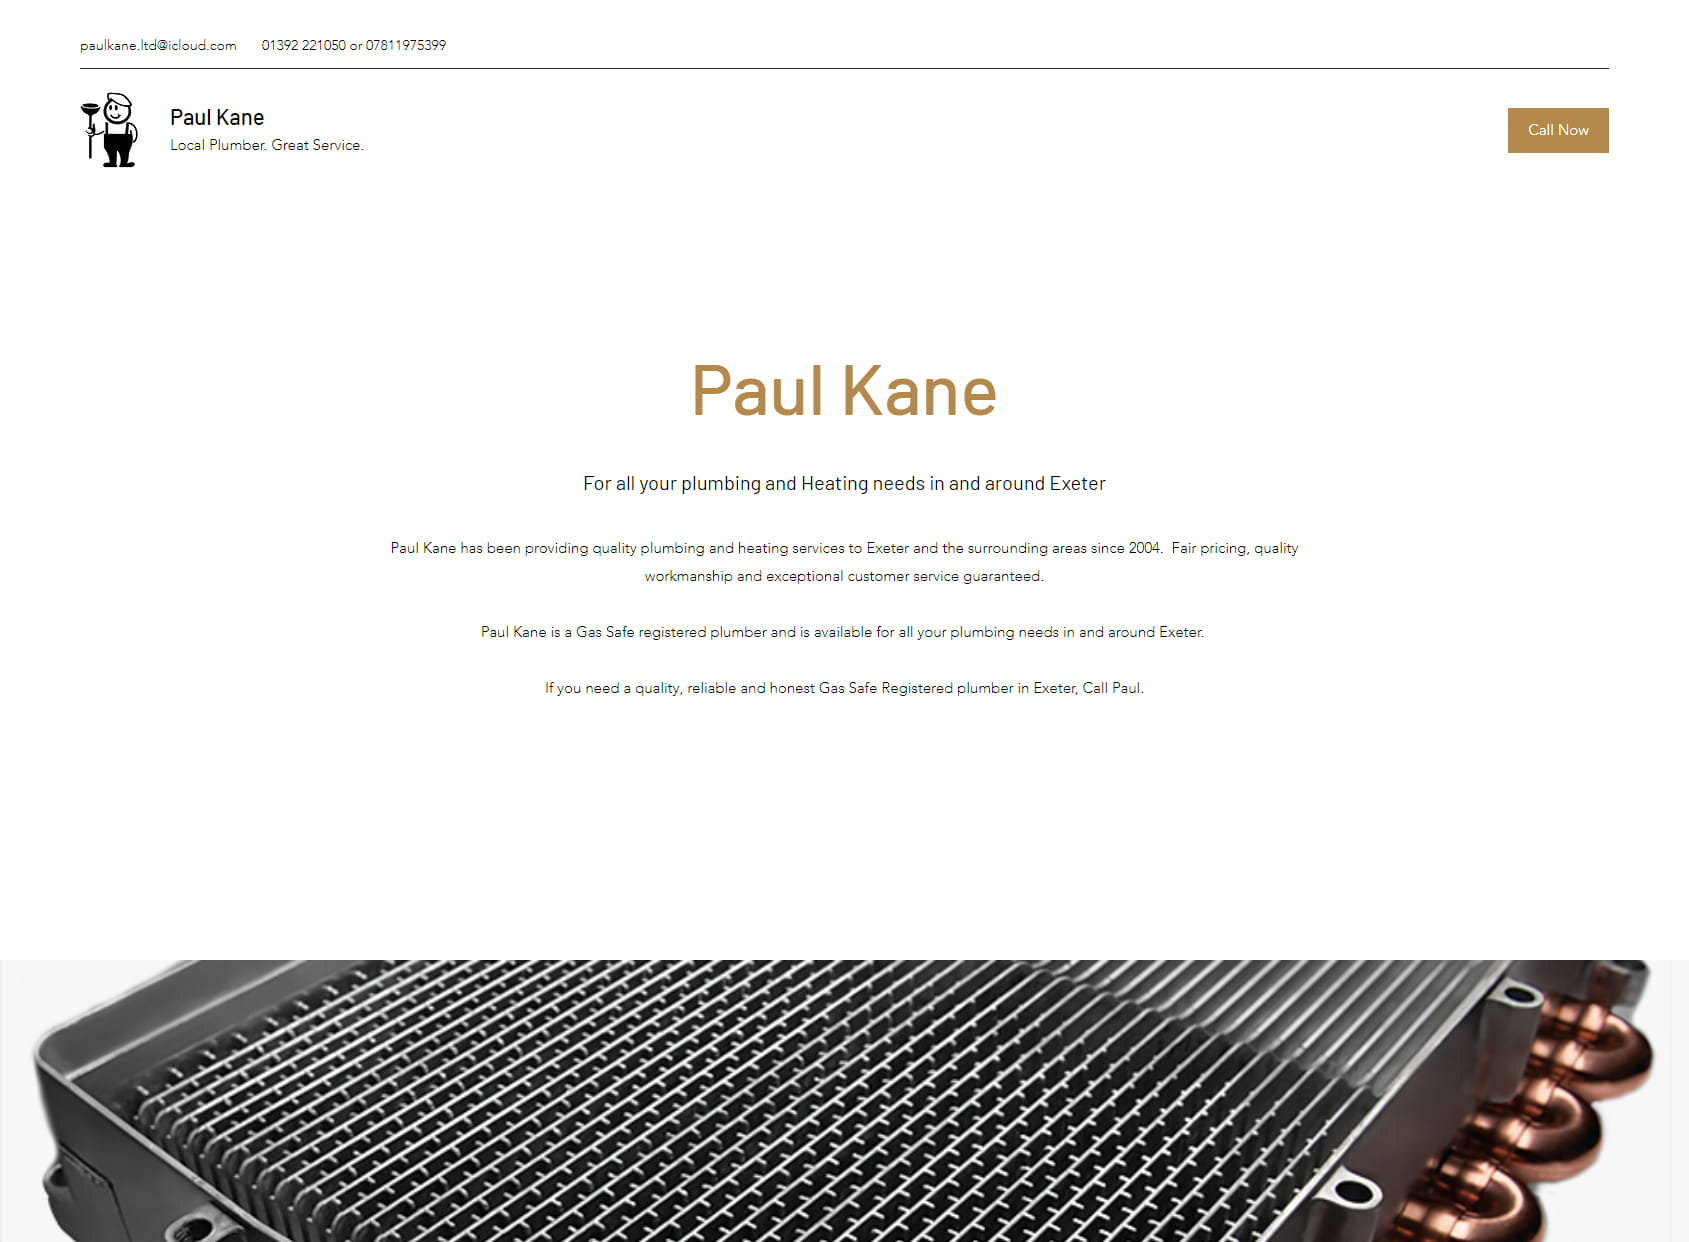 Paul Kane Ltd